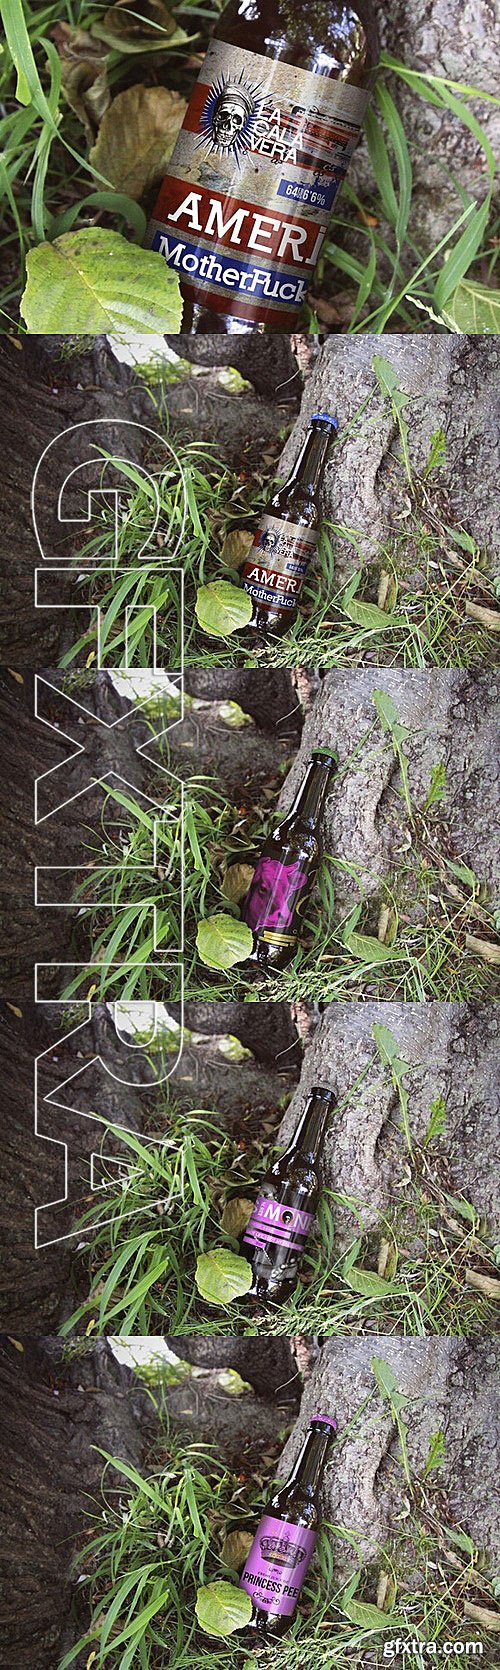 CM - Beer Bottle Forest Mockup 308189